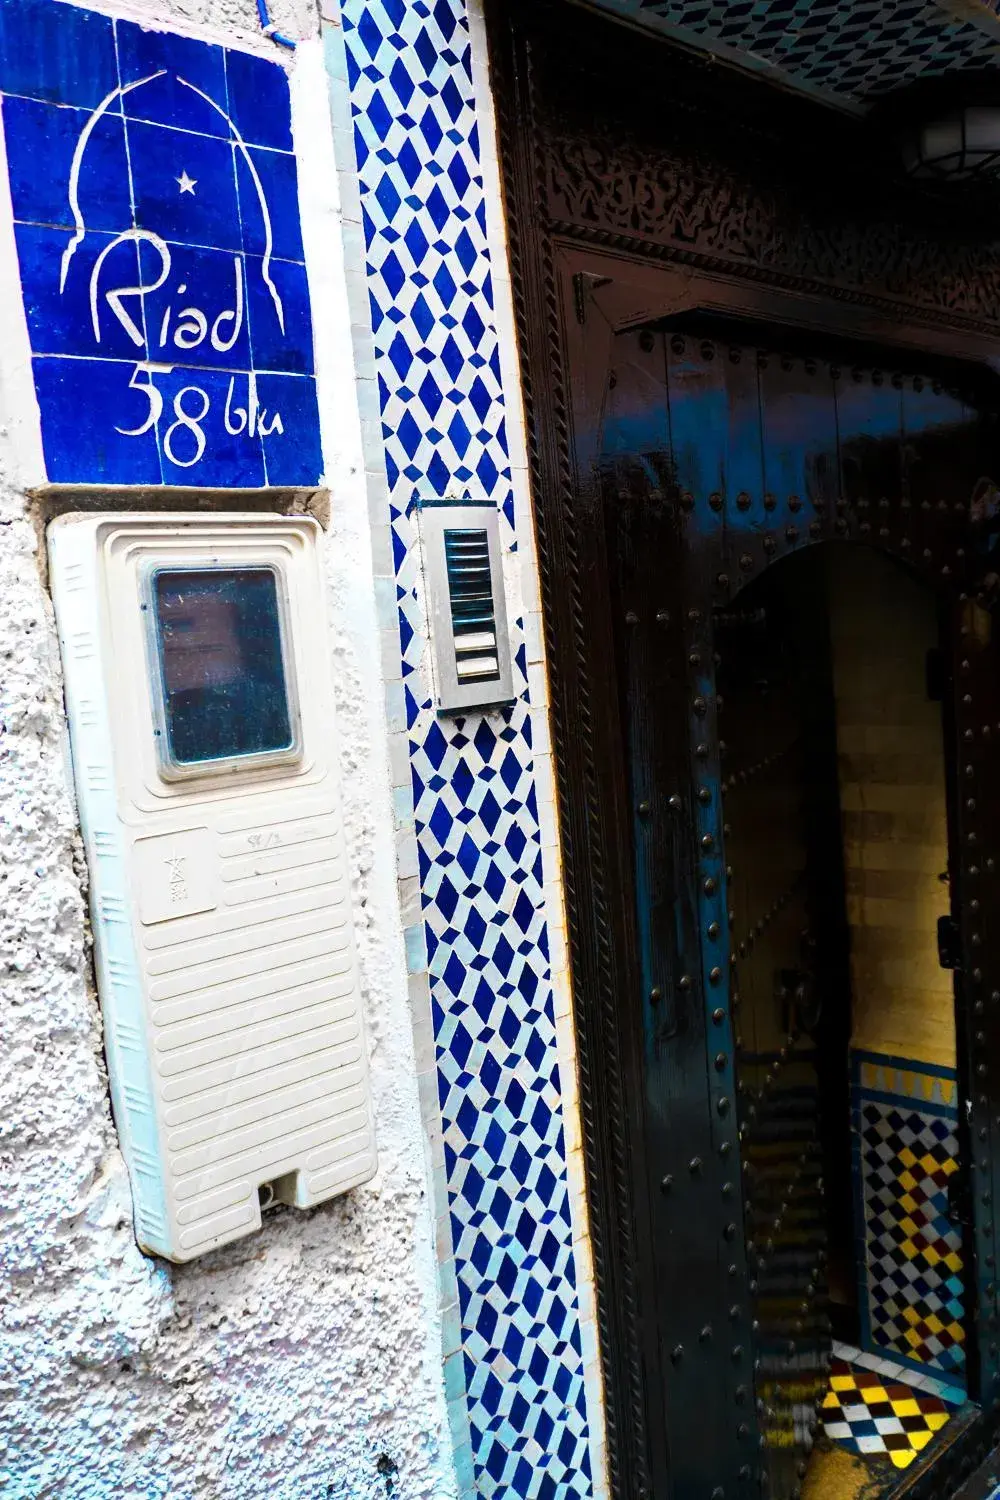 Facade/entrance in Riad 58 Blu